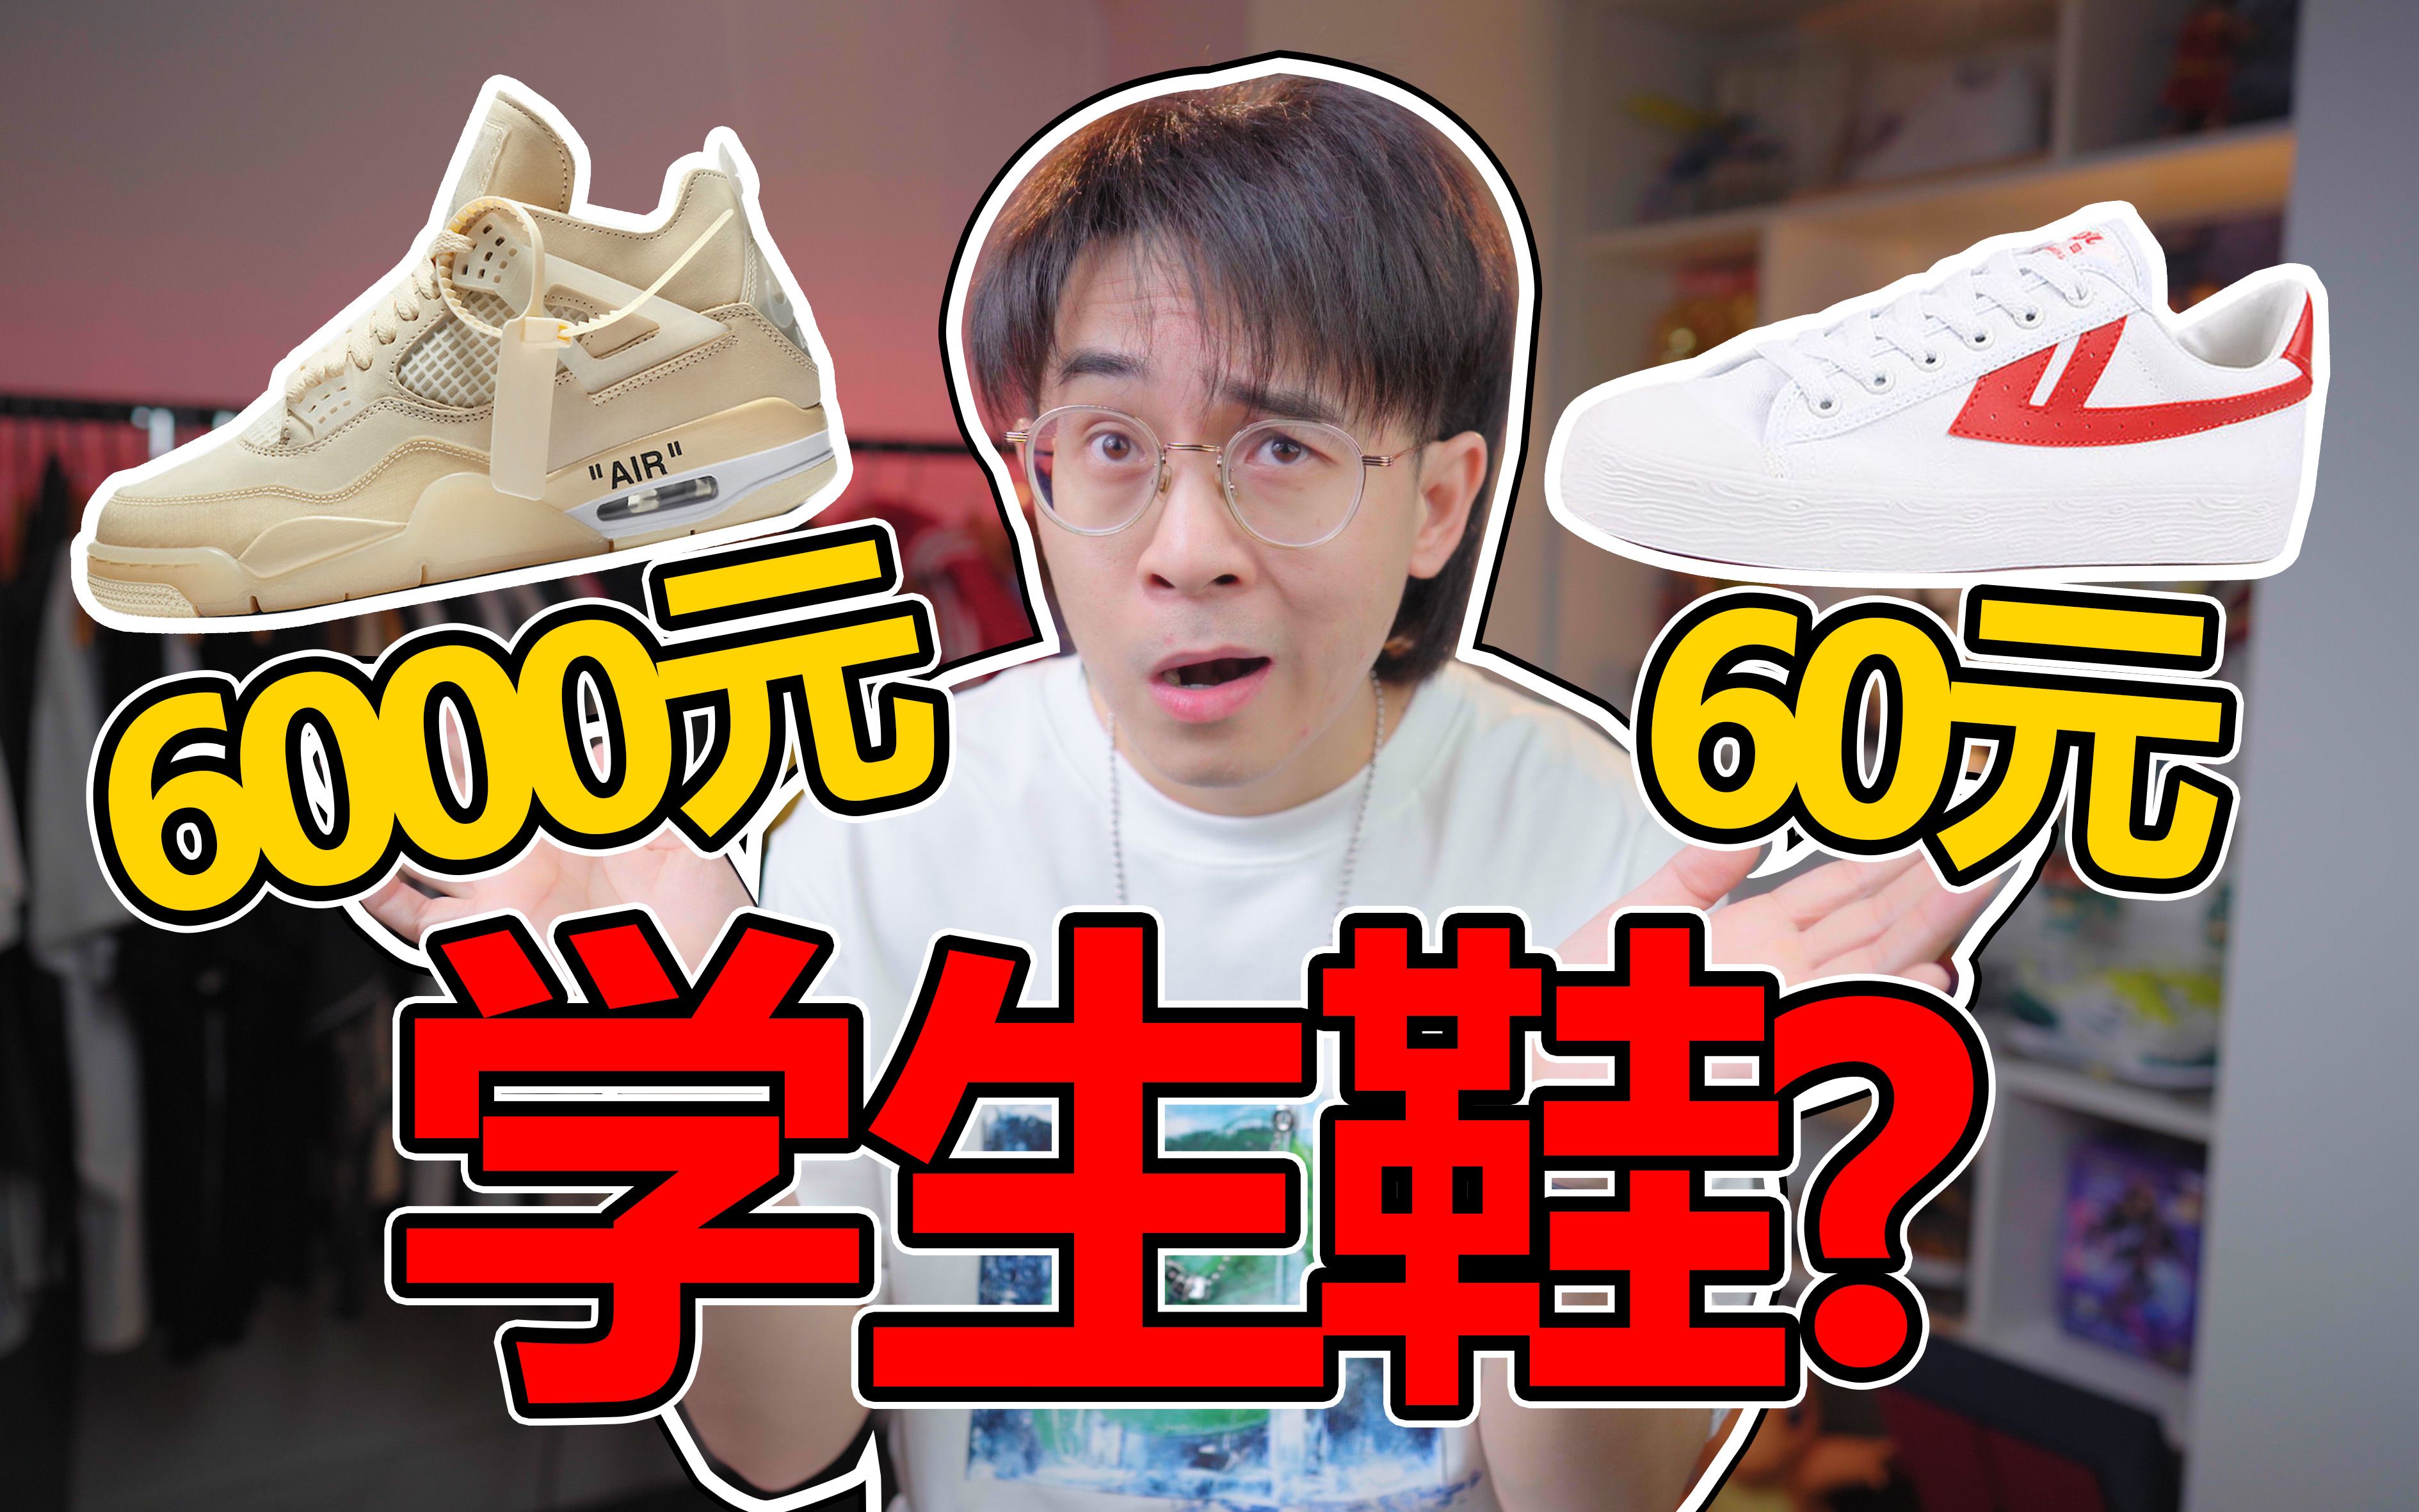 学生究竟该买多少钱的鞋?